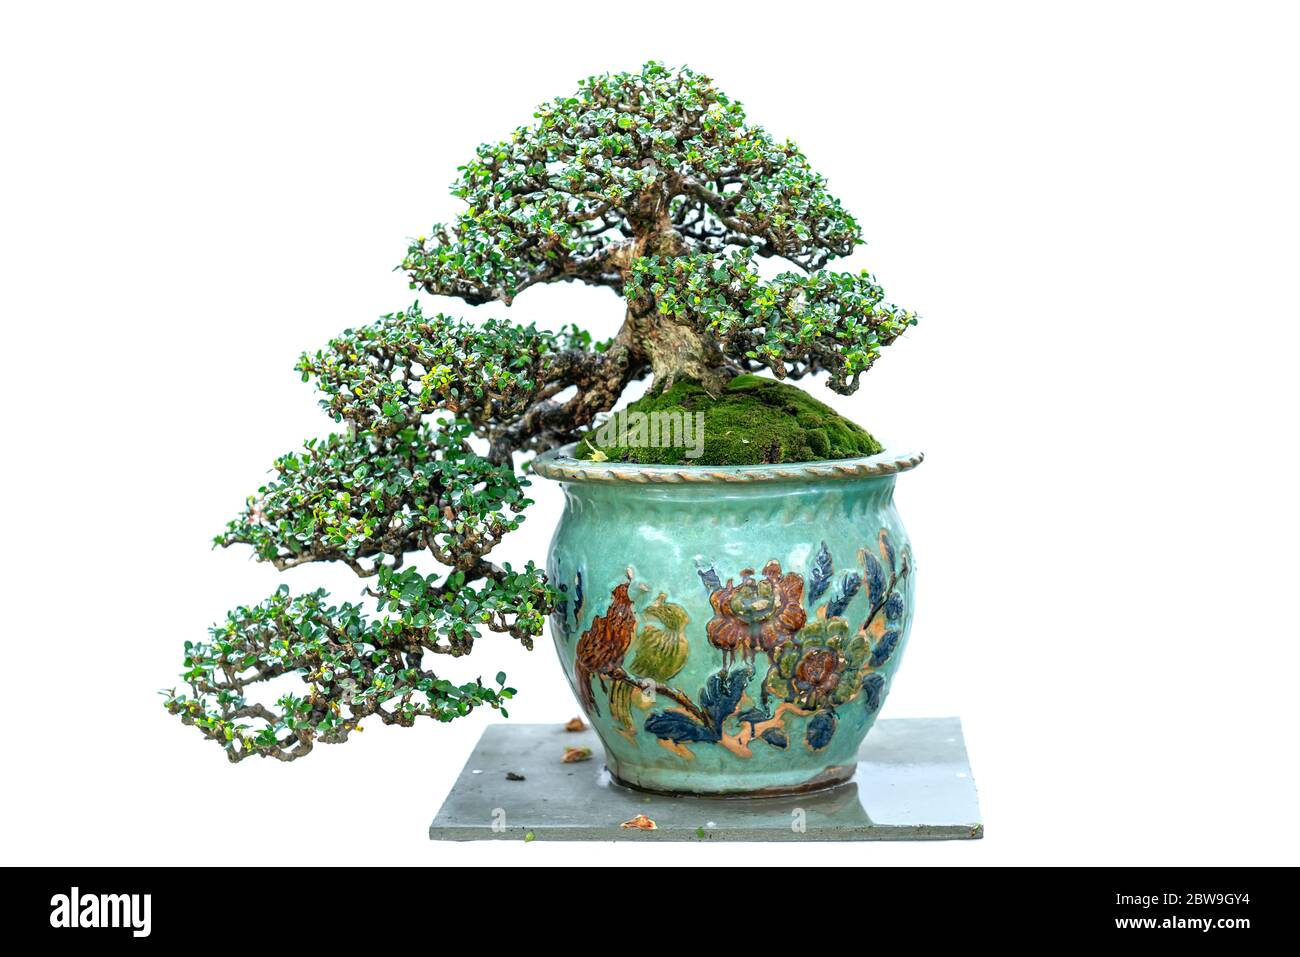 Bonsai arbre isolé sur fond blanc dans une plante en pot avec de nombreuses formes uniques symbolisant une abstraction dans la vie Banque D'Images